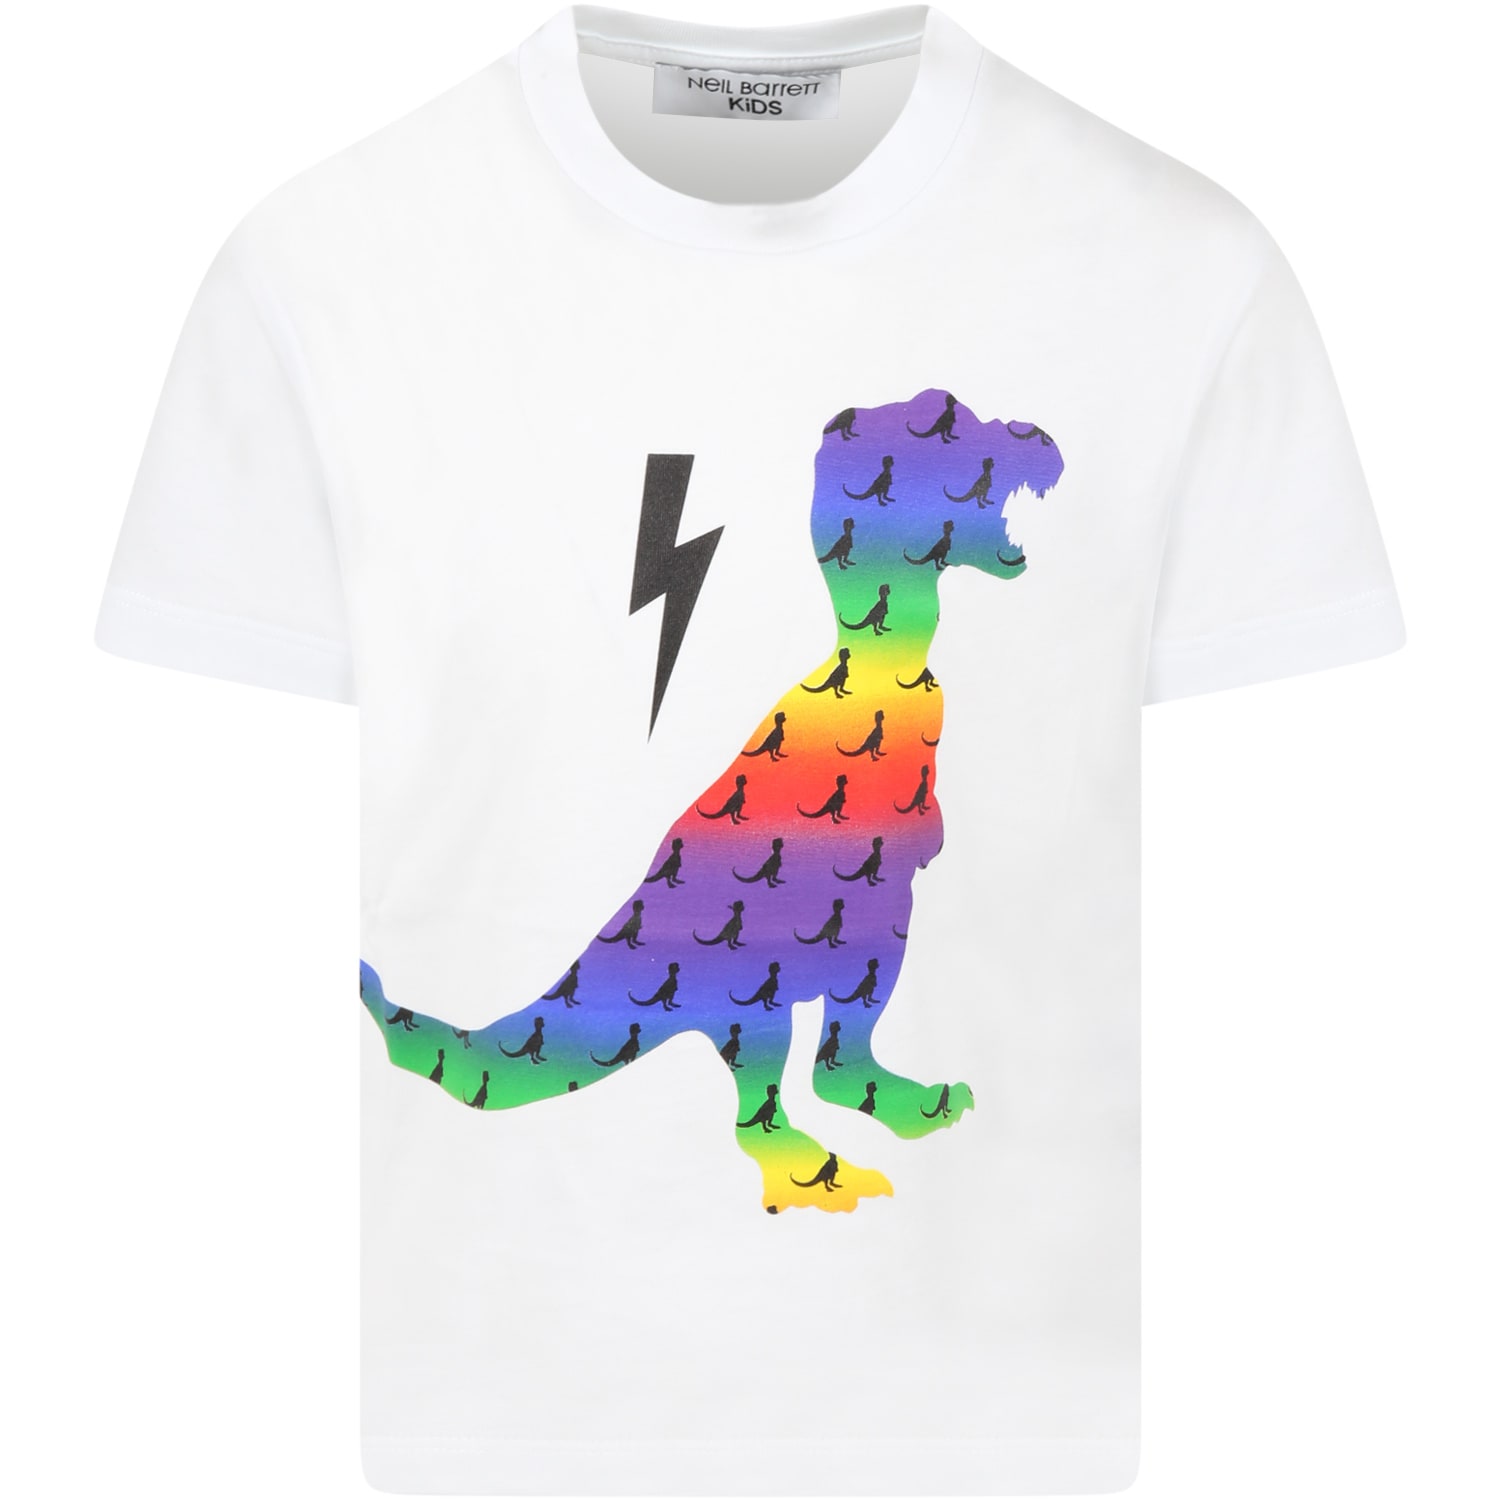 Neil Barrett White T-shirt For Boy With Dinosaur